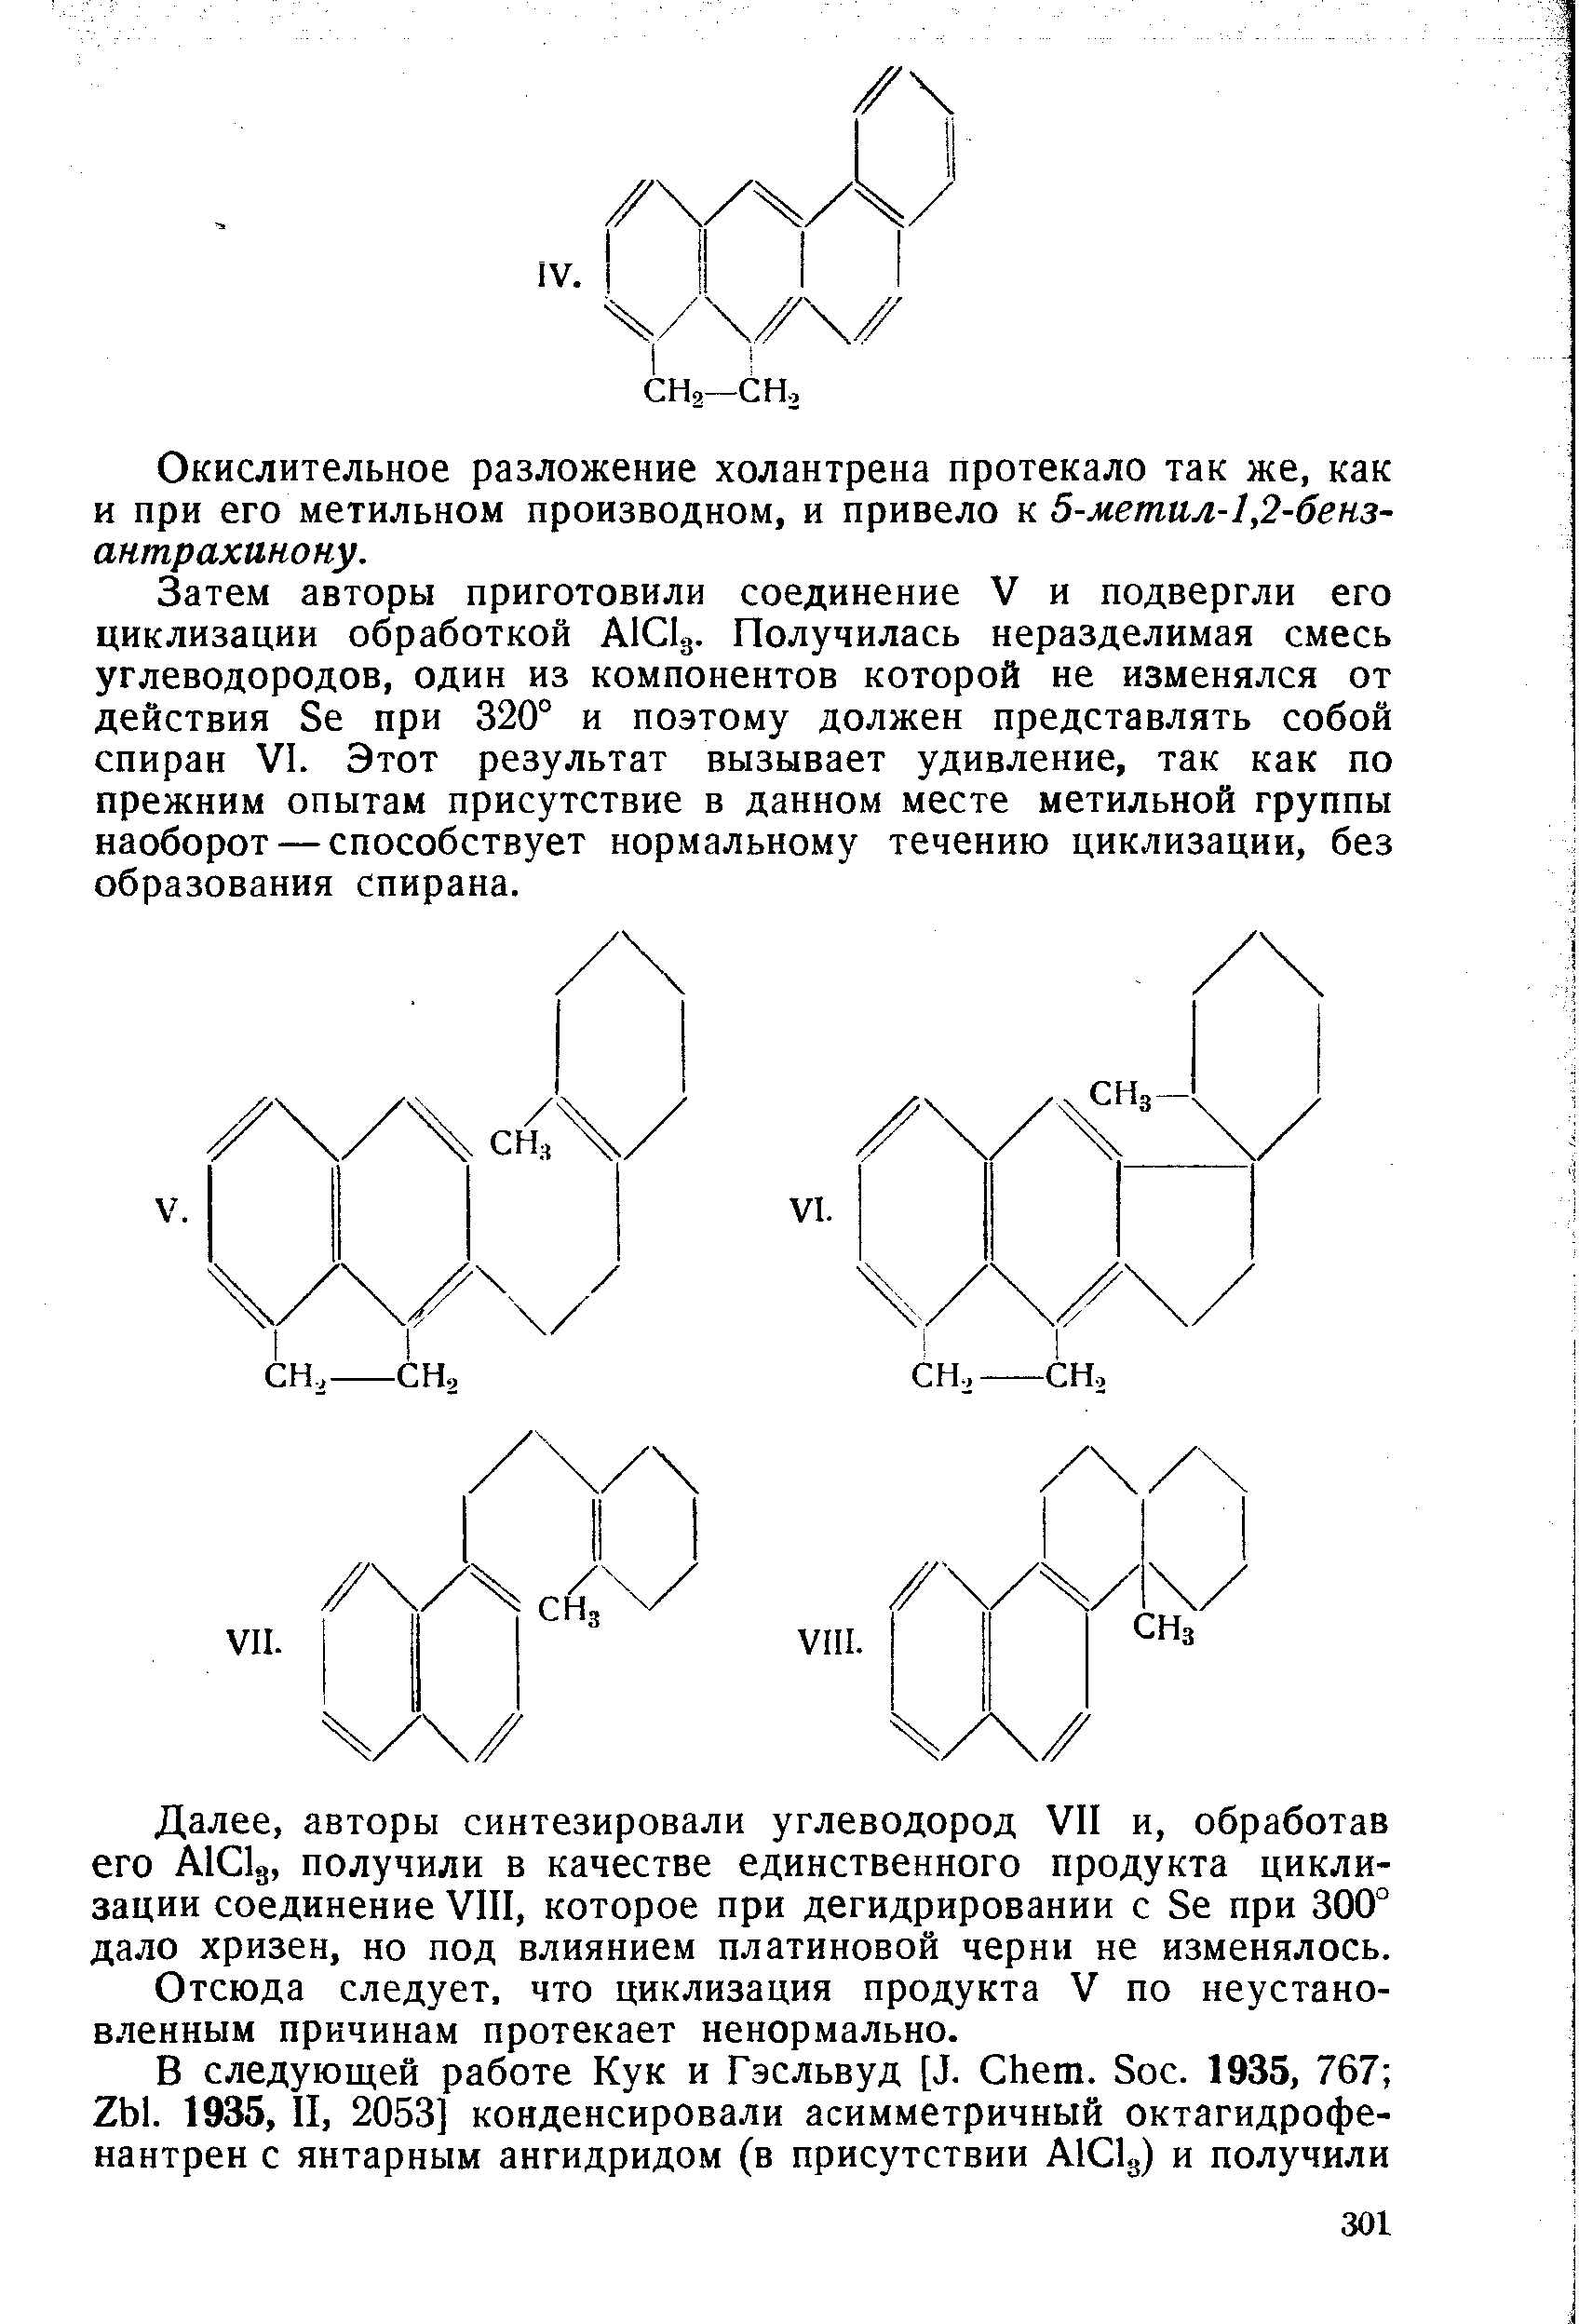 Окислительное разложение холантрена протекало так же, как и при его метильном производном, и привело к 5-метил-1,2-бенз-антрахинону.